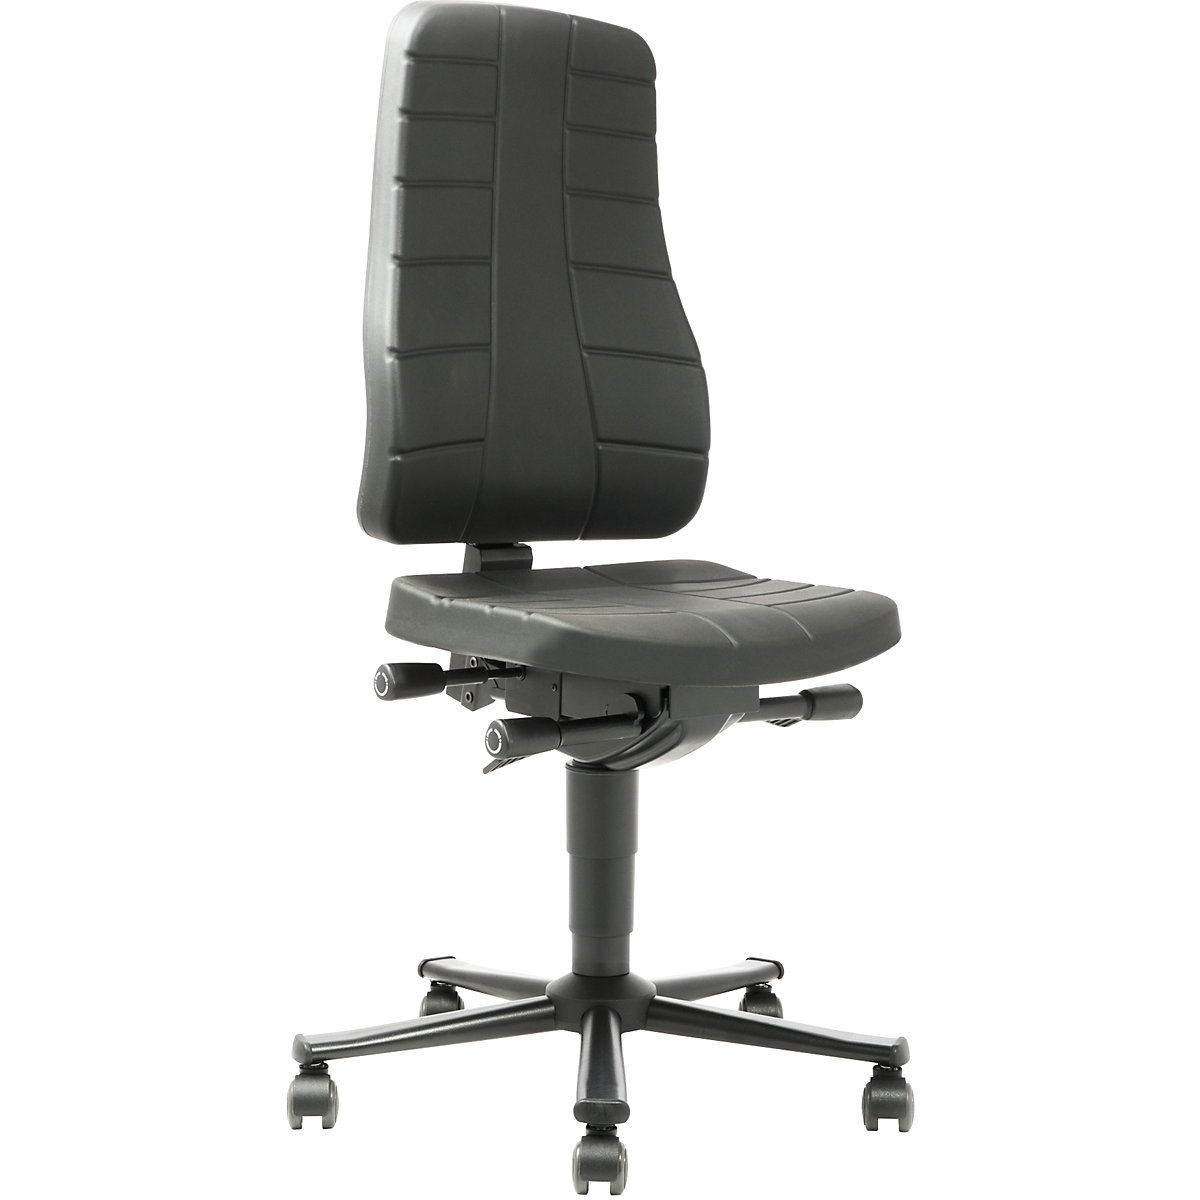 Pracovní otočná židle All-in-One – bimos